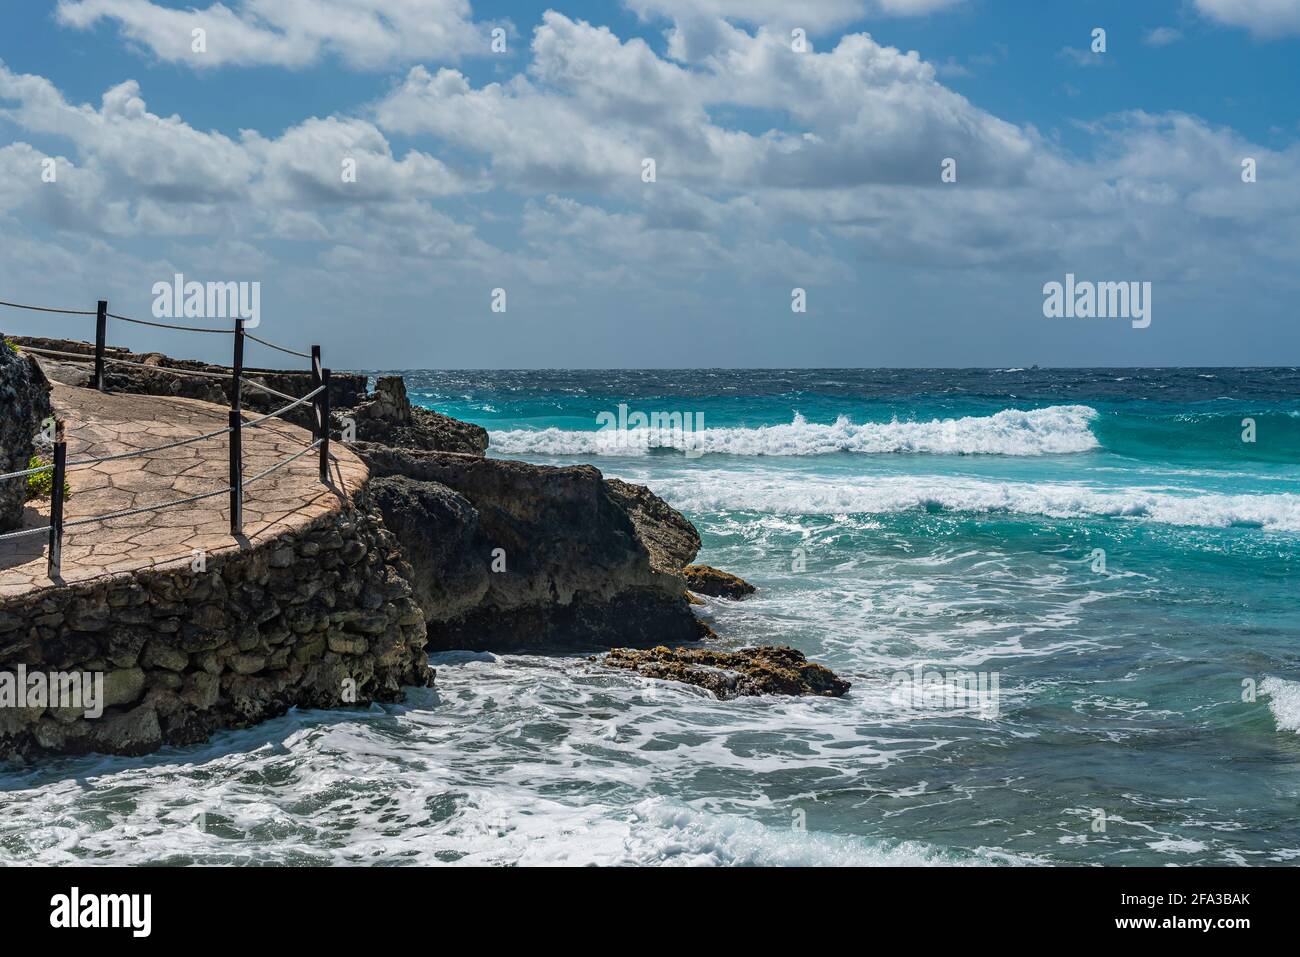 Isla Mujeres South Point Punta Sur Cancun Mexico Island türkisfarbenes Wasser und Weg an der felsigen Küste, Hintergrund blauer Himmel Stockfoto